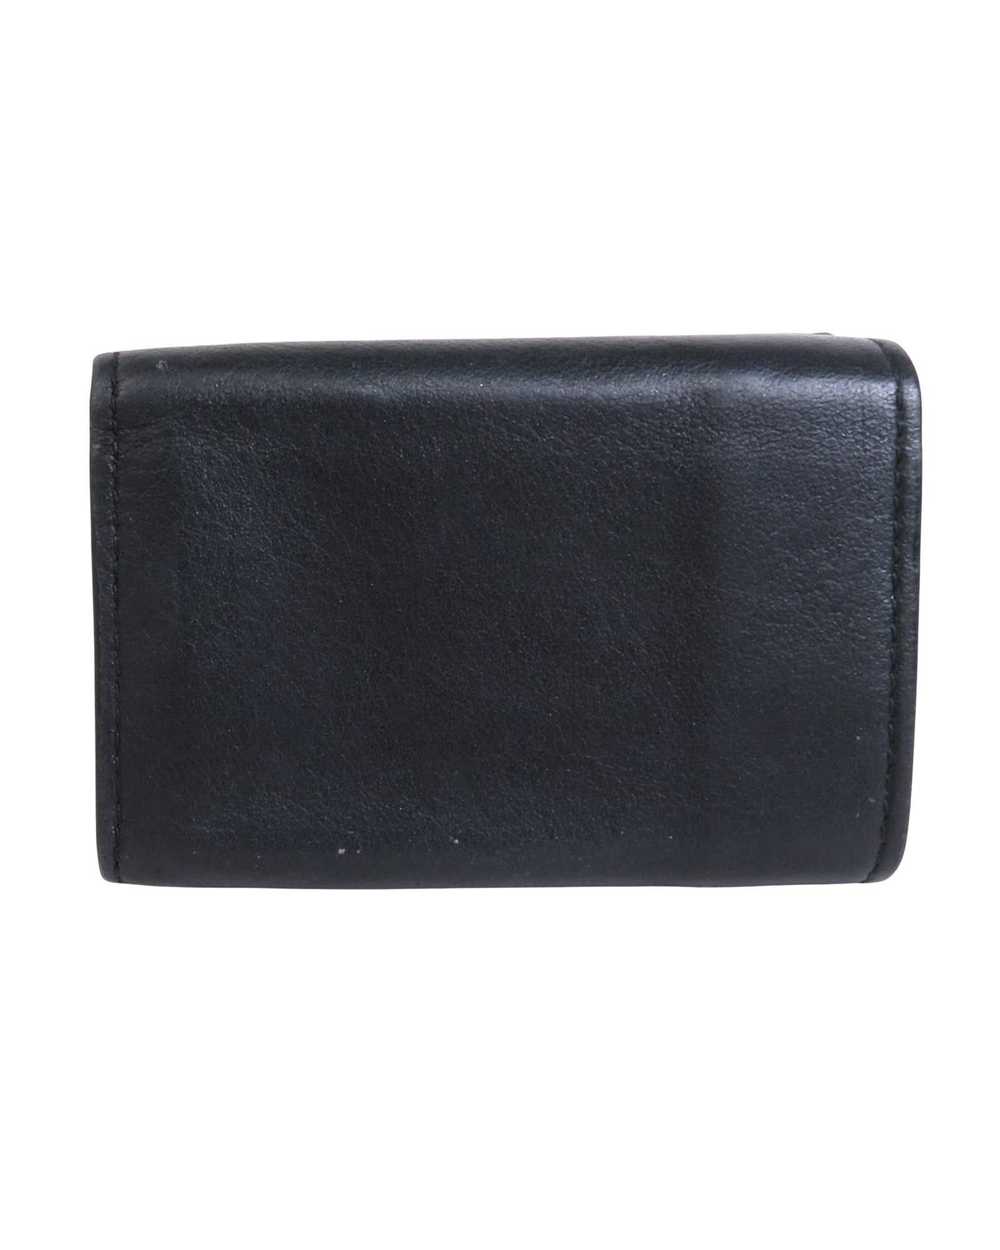 Balenciaga Cash Mini Wallet - image 2